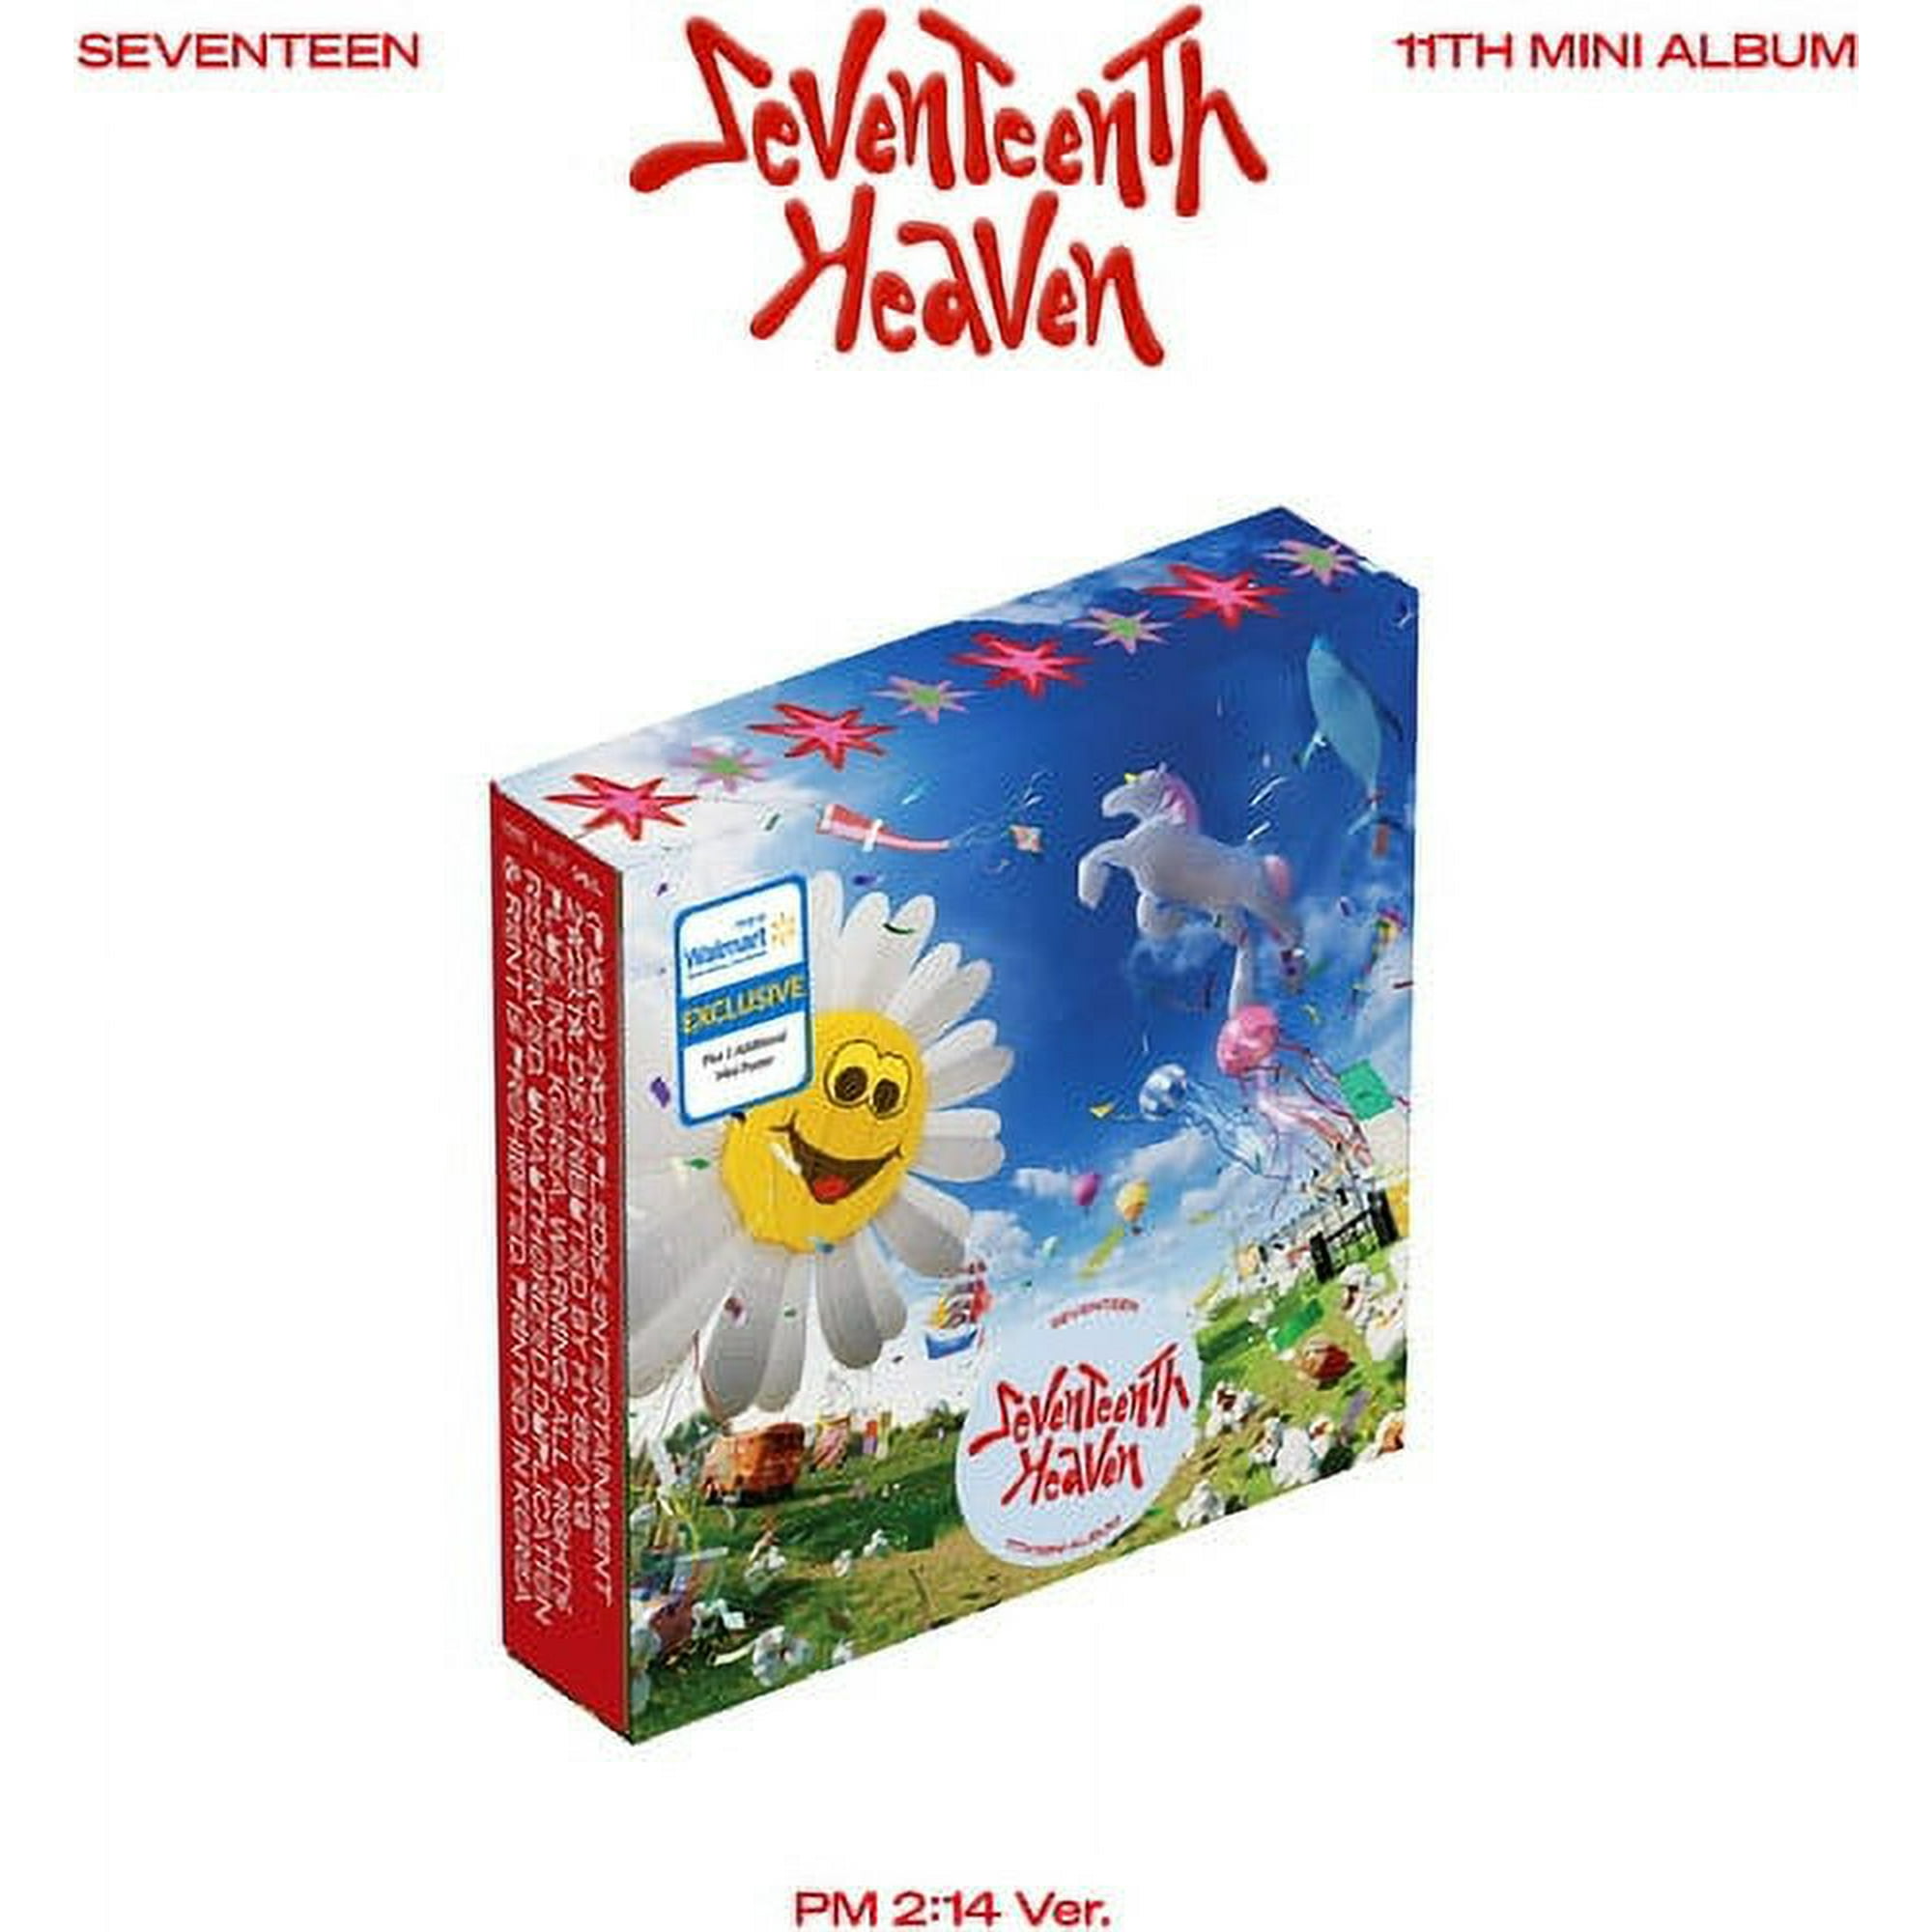 SEVENTEEN 11th Mini Album ウォルマート限定盤